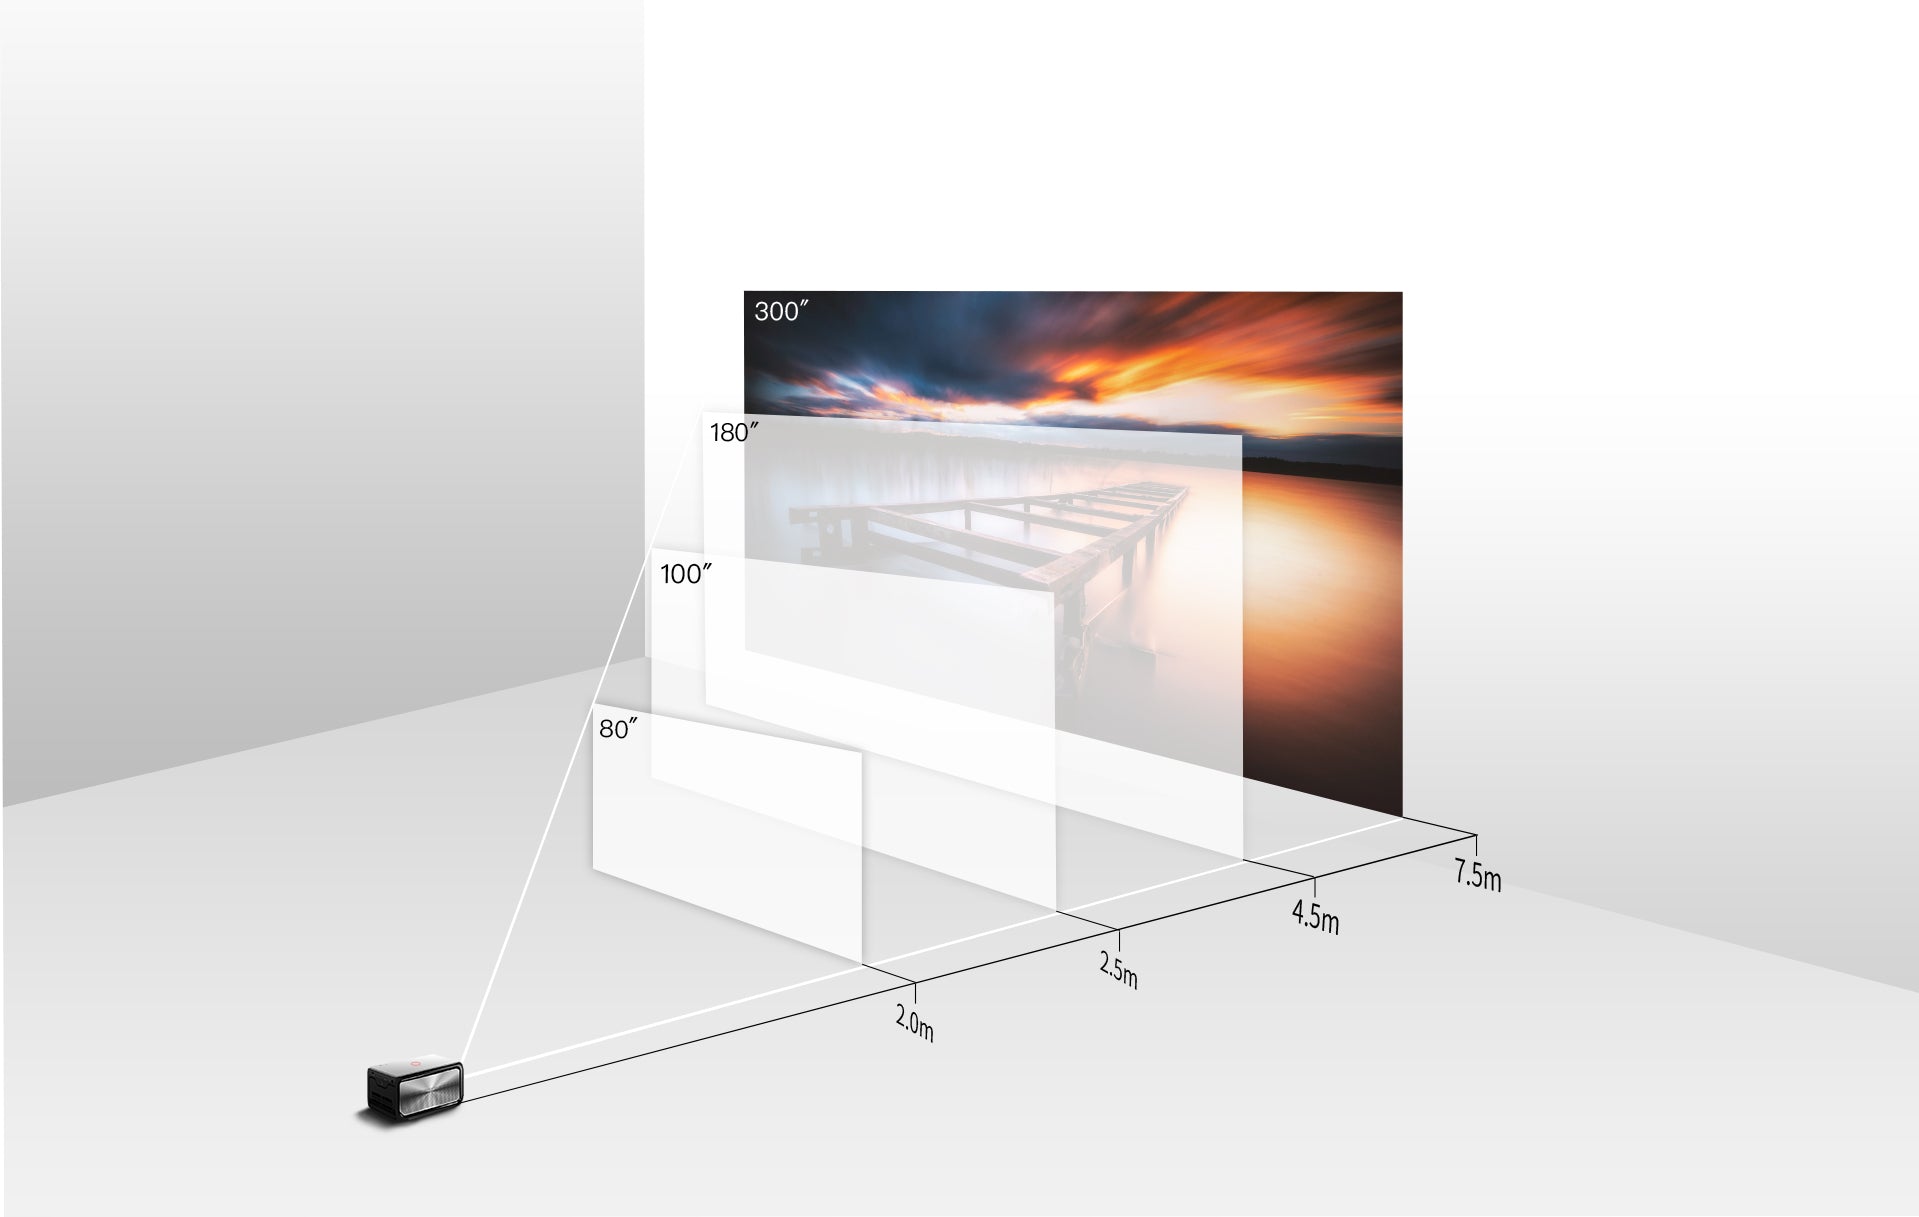 Экран высотой 120. Размер экрана 300 дюймов для проектора. Габариты экрана для проектора шириной 330см. Экран для проектора 300 дюймов. Размер экрана 100-120 дюймов для проектора.